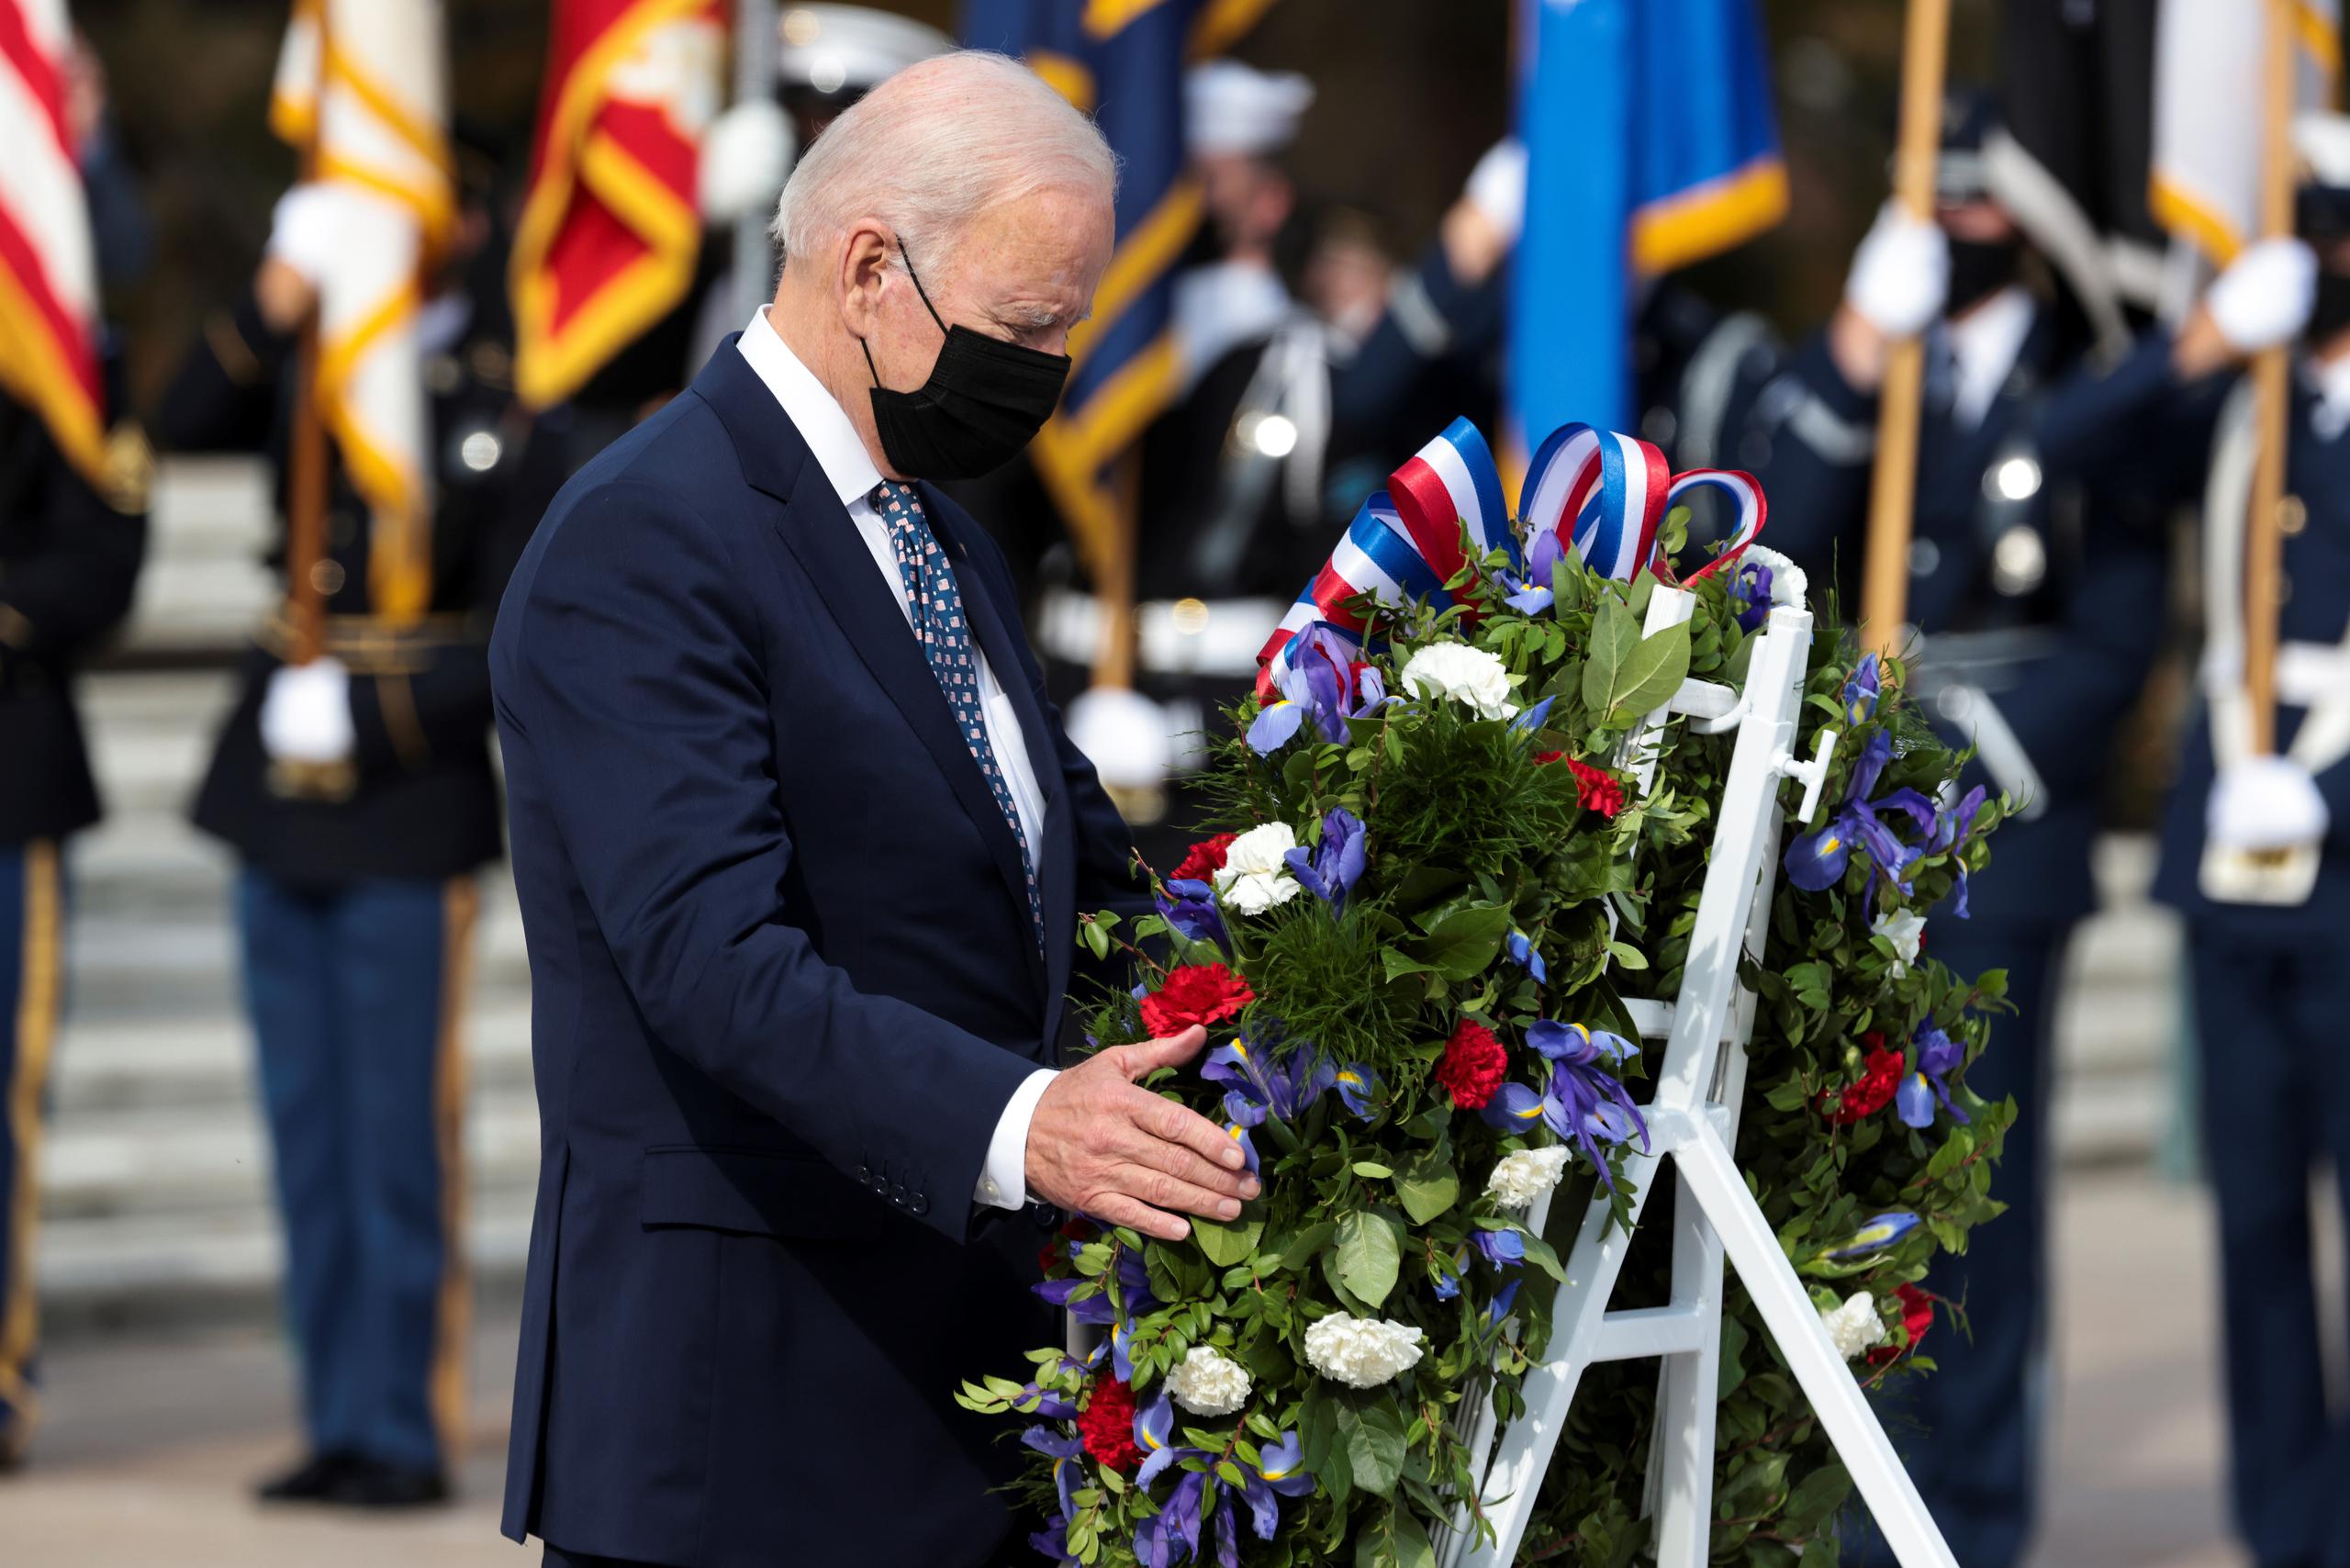 El presidente de Estados Unidos, Joe Biden, participó en una ceremonia por el Día de los Veteranos en el cementerio nacional de Arlington, Virginia, a dos meses de ponerle fin al conflicto de guerra de 20 años en Afganistán.